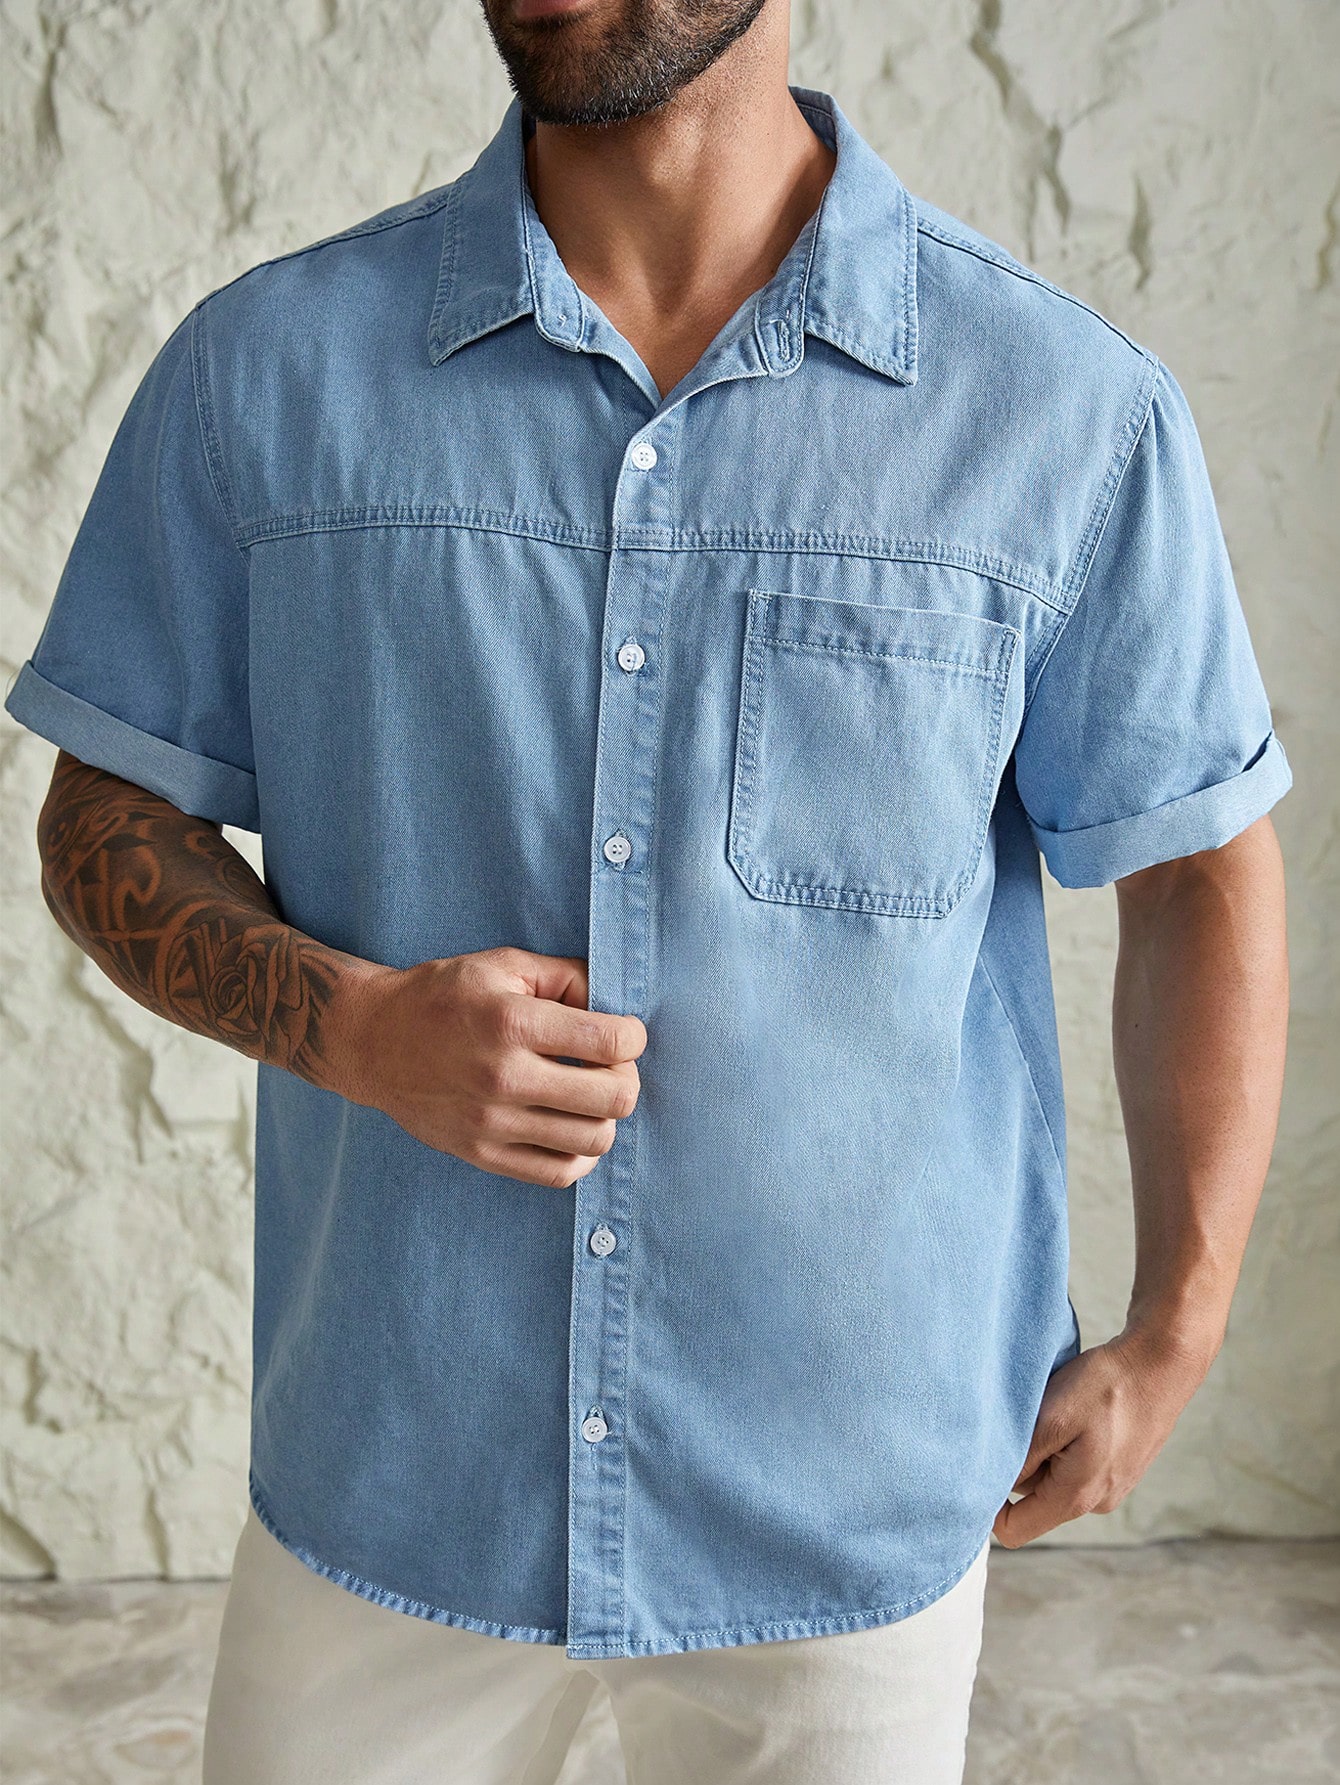 Мужская повседневная модная джинсовая рубашка больших размеров Manfinity Hypemode, синий